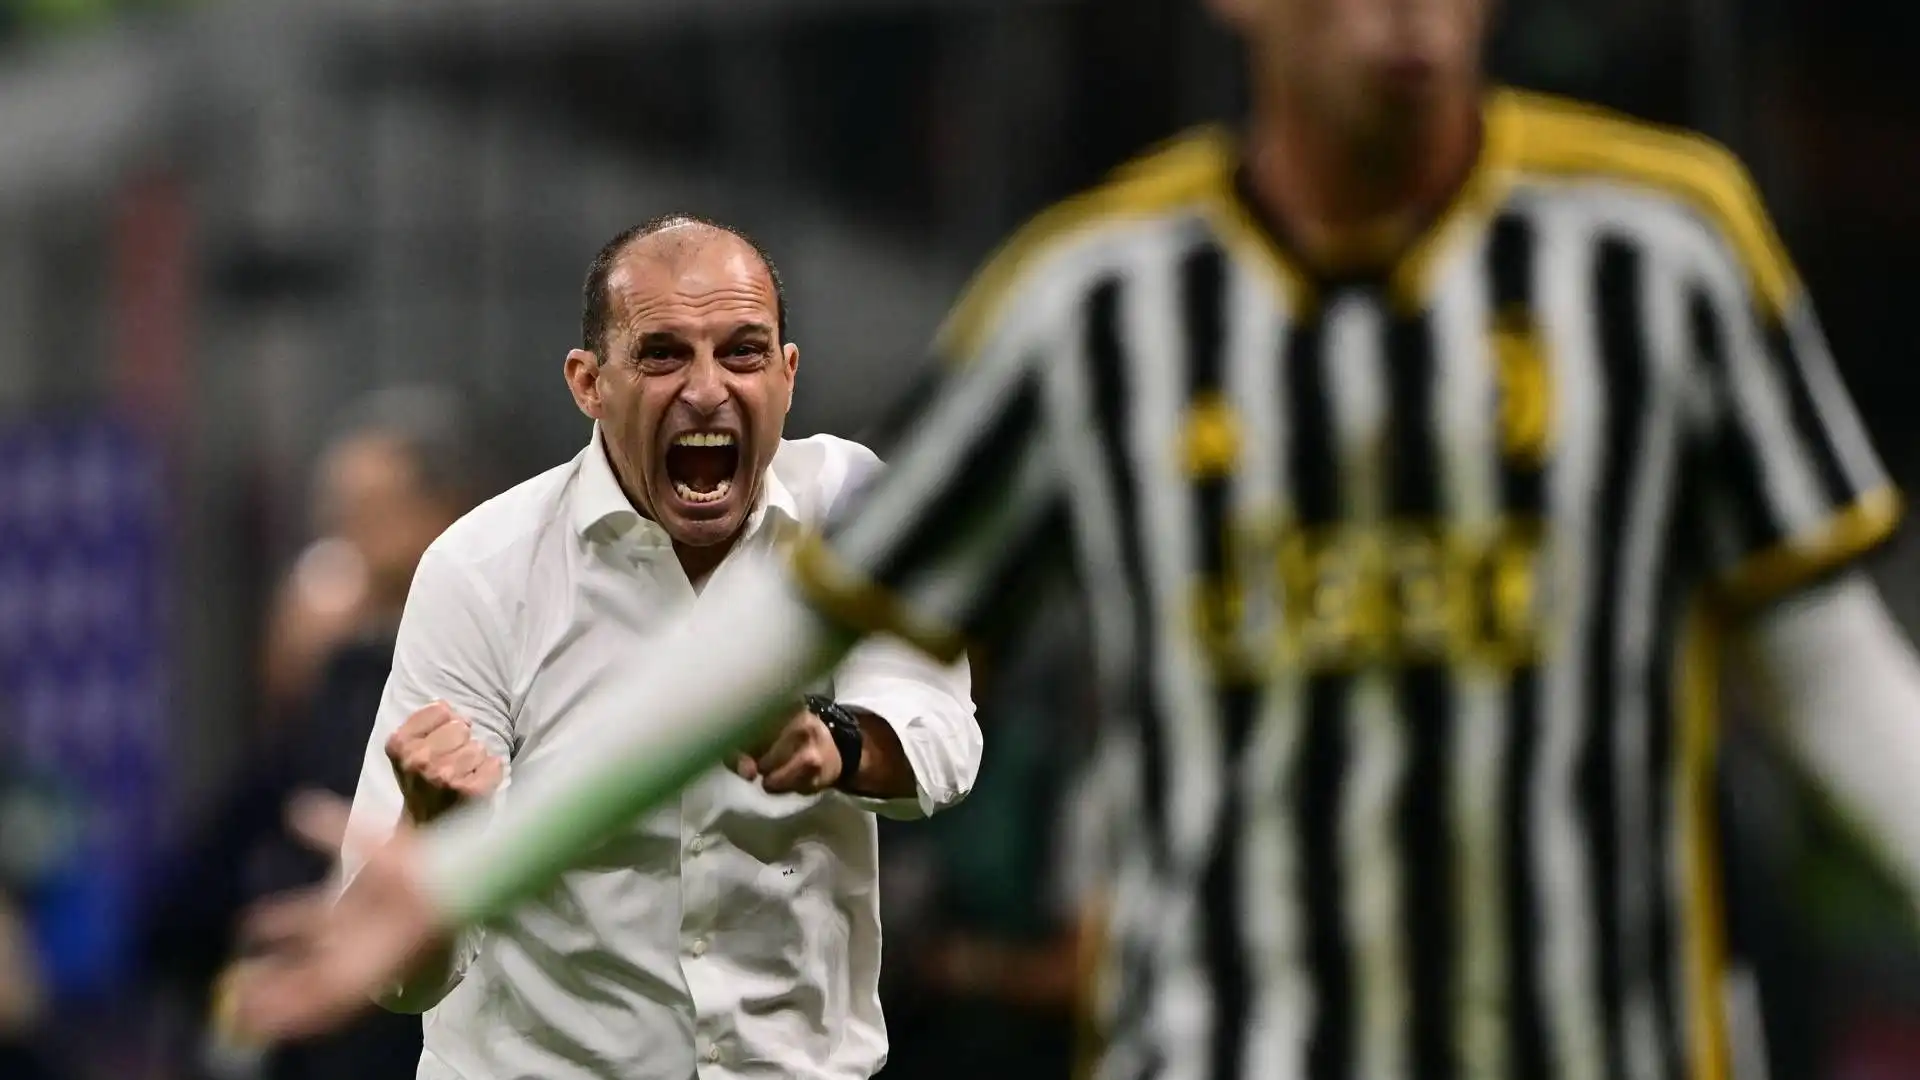 L'allenatore della Juventus si è sfogato, calciando via una bottiglietta